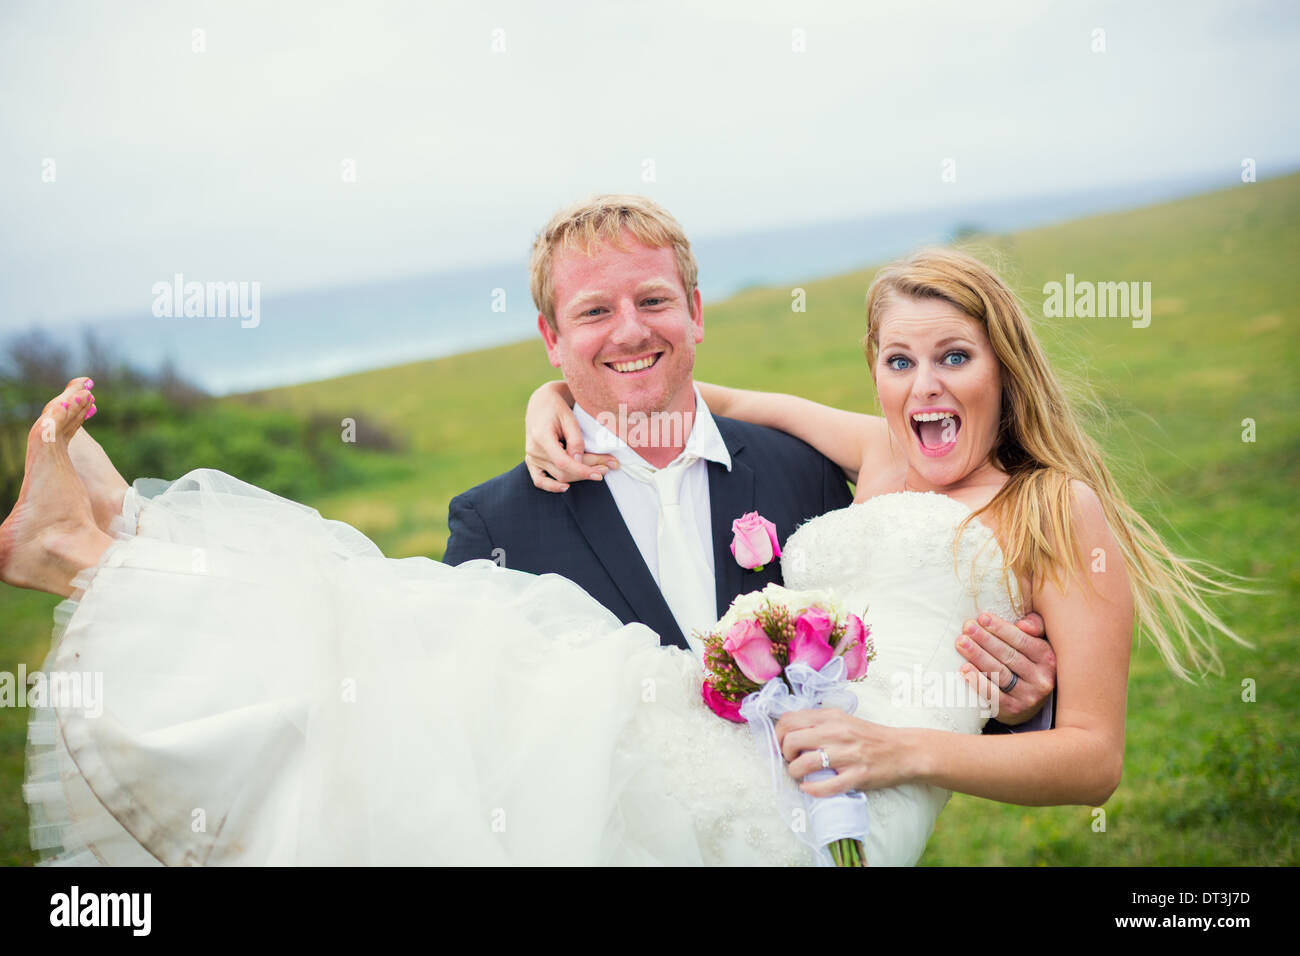 Wedding Couple, heureux mariés, profondeur de champ, l'accent sur bride Banque D'Images